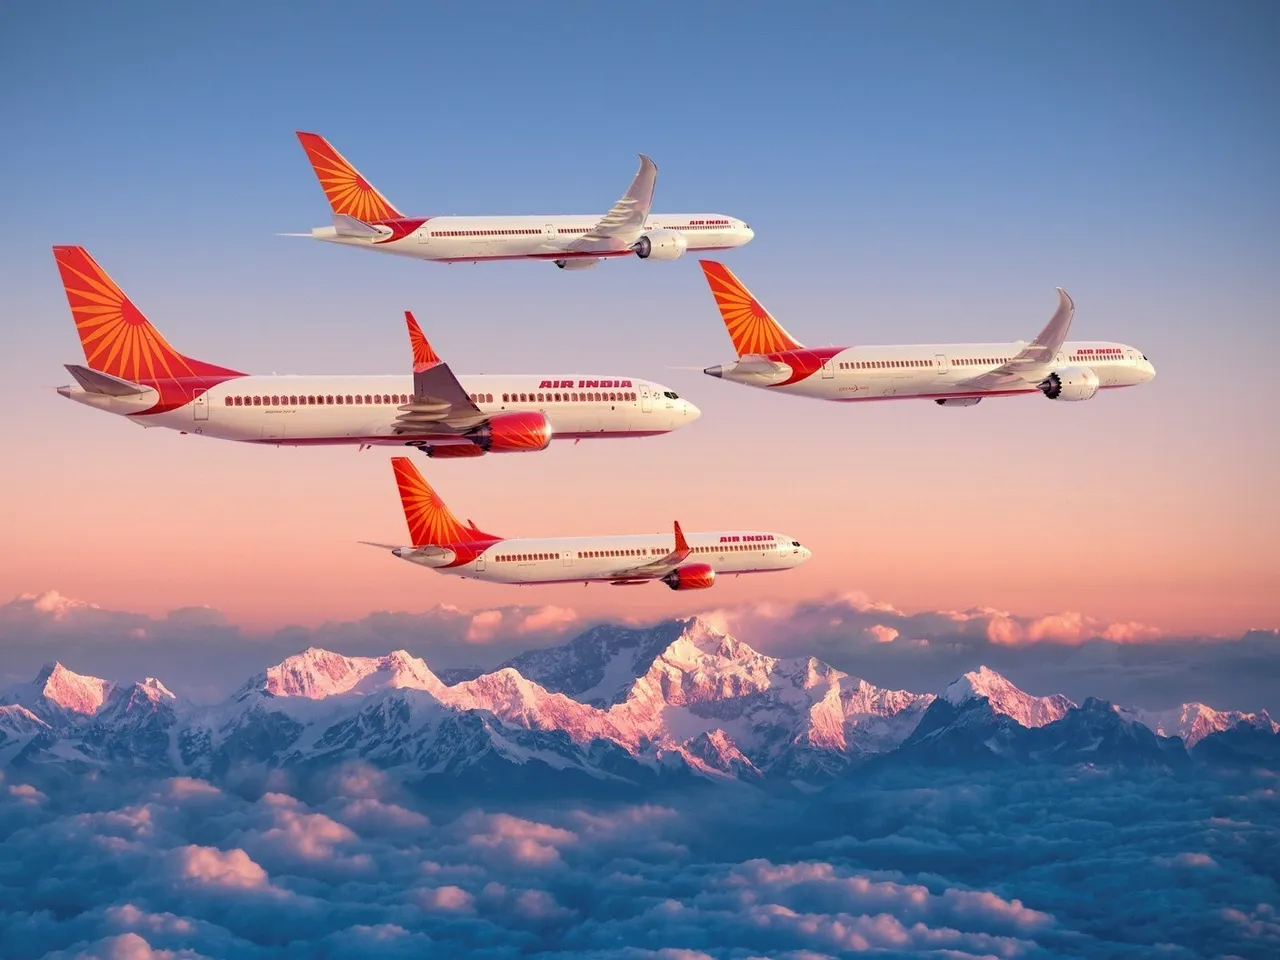 Air India Fleet